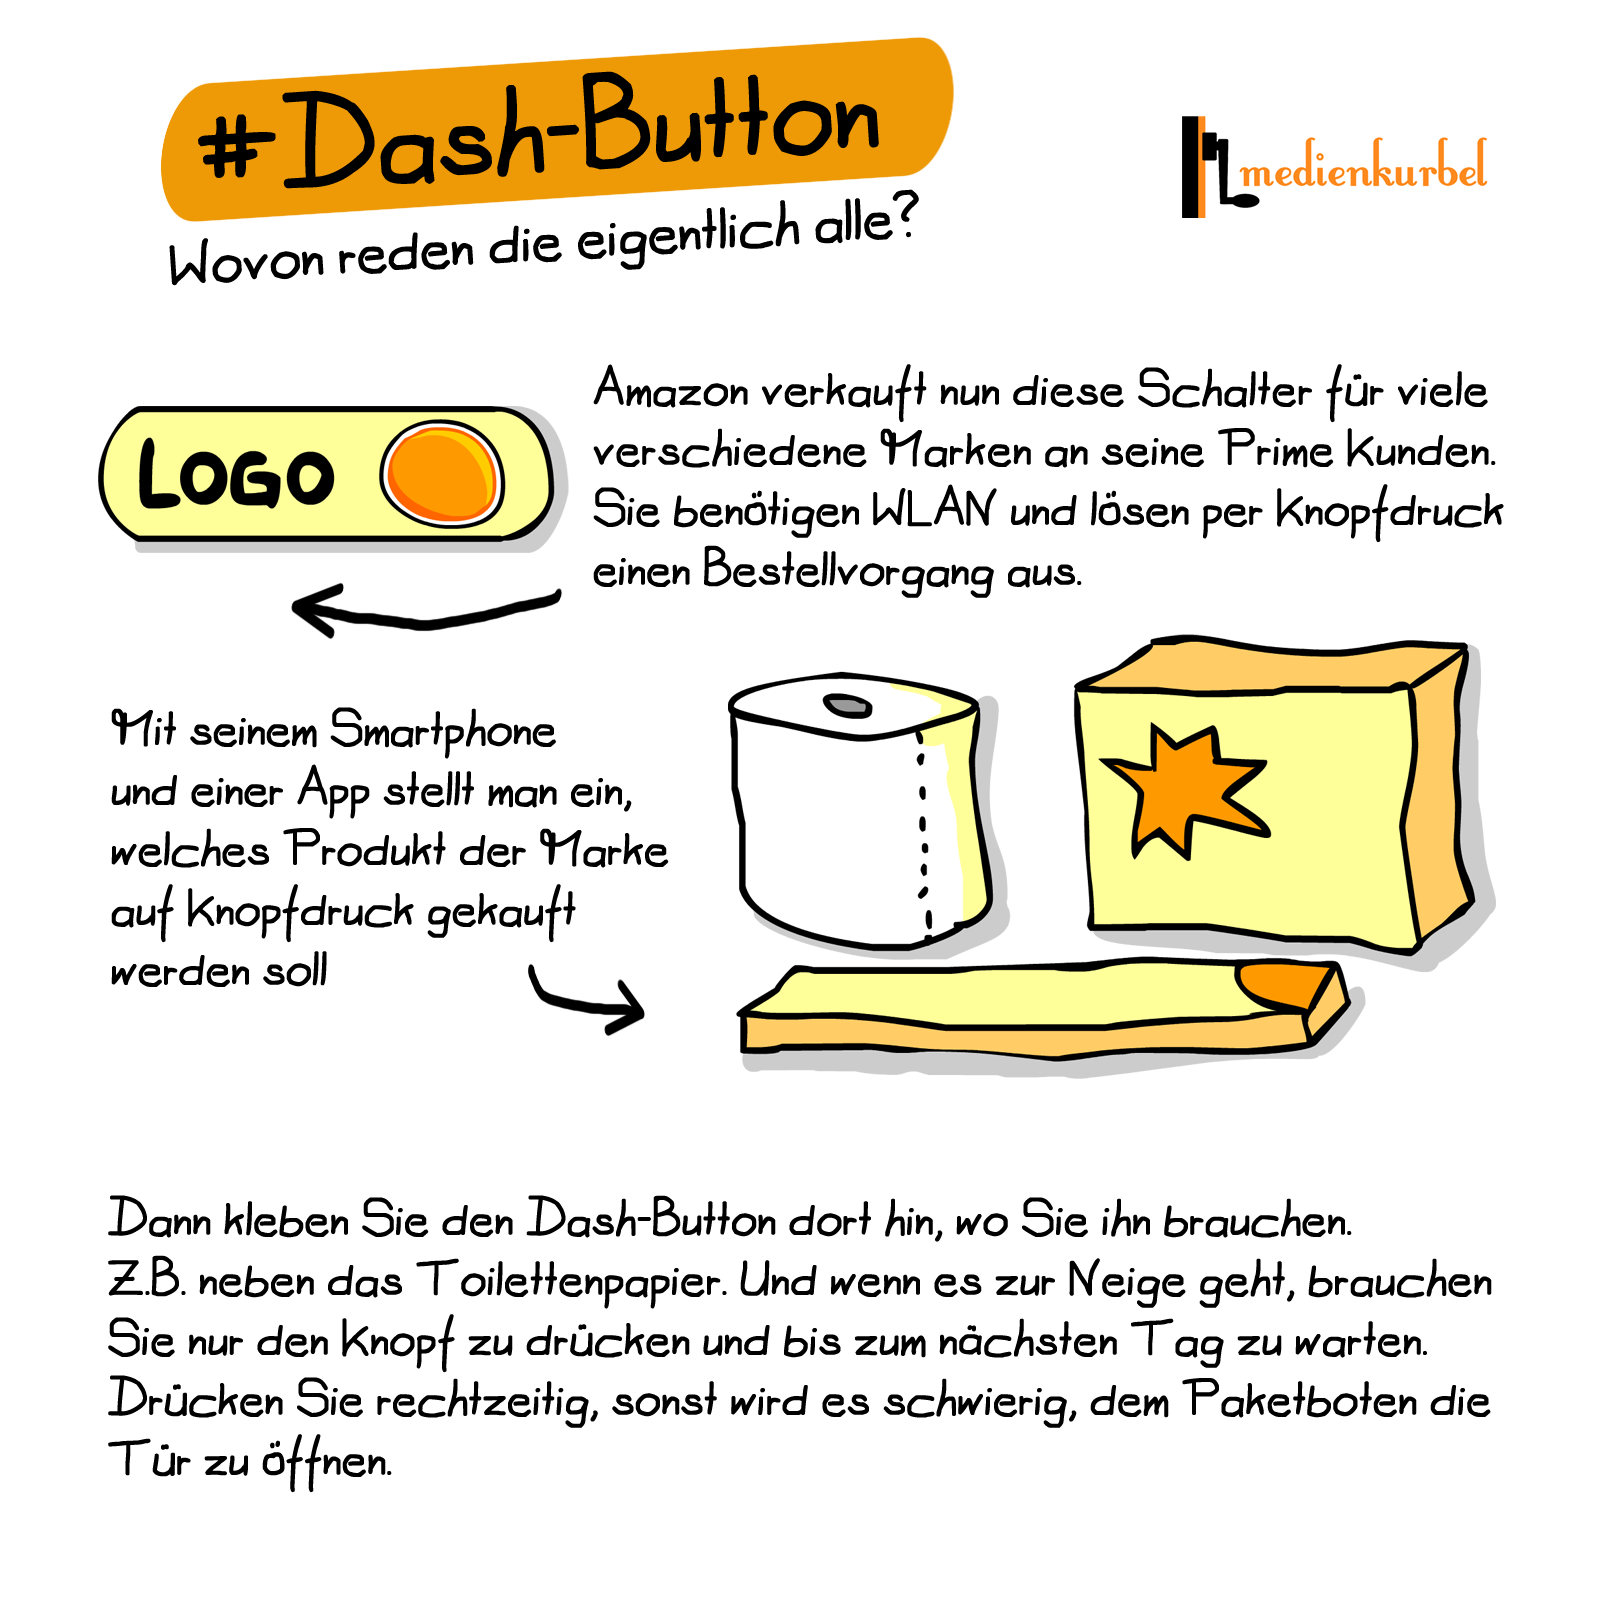 Dash-Button